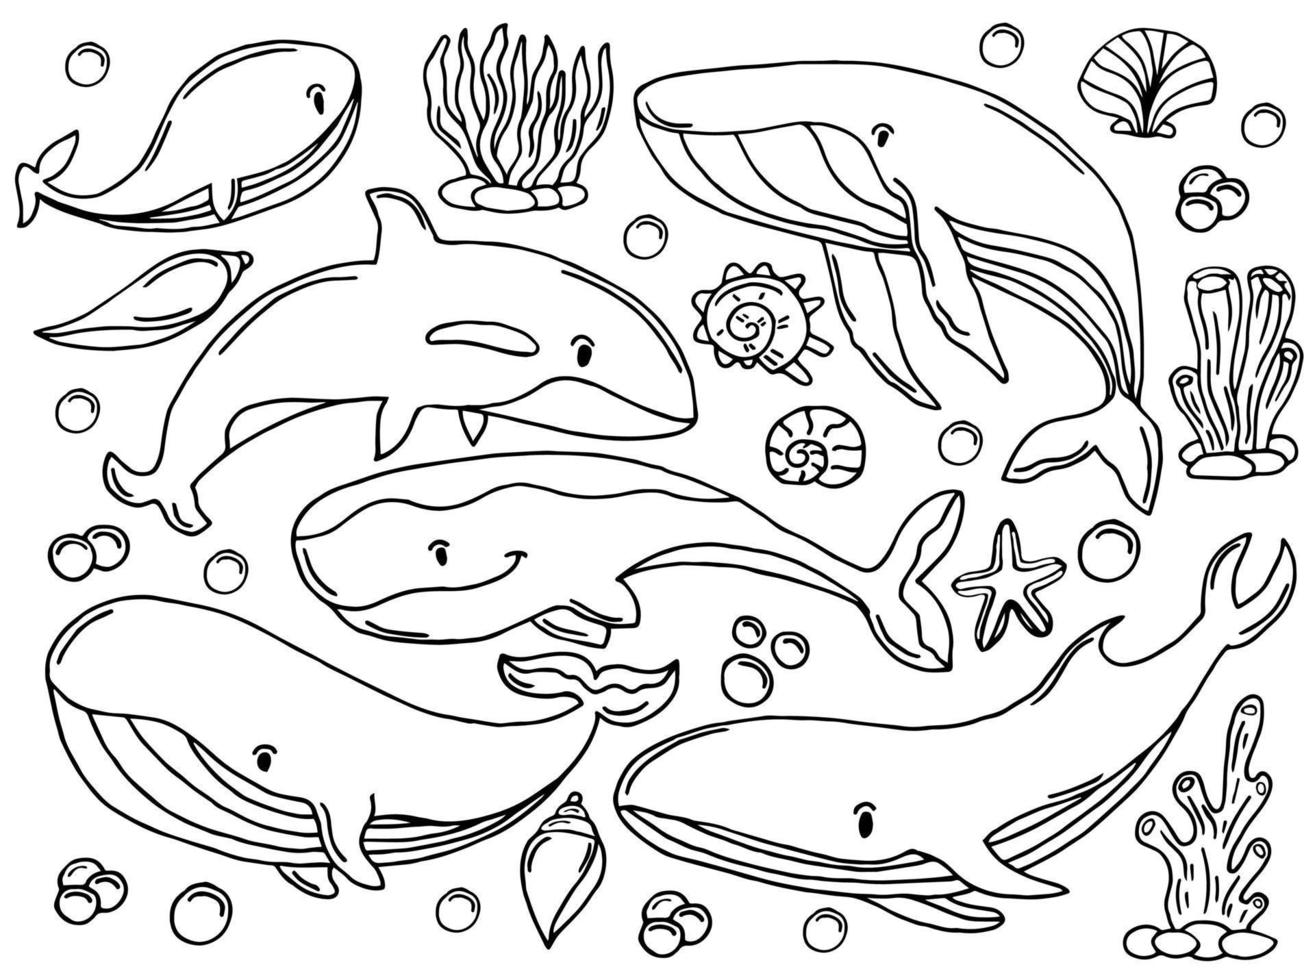 Farbskizzensatz für Wale. große Sammlung verschiedener handgezeichneter Wale und Delfine im Gravurstil. Zoologische Illustration von Meeressäugern vektor